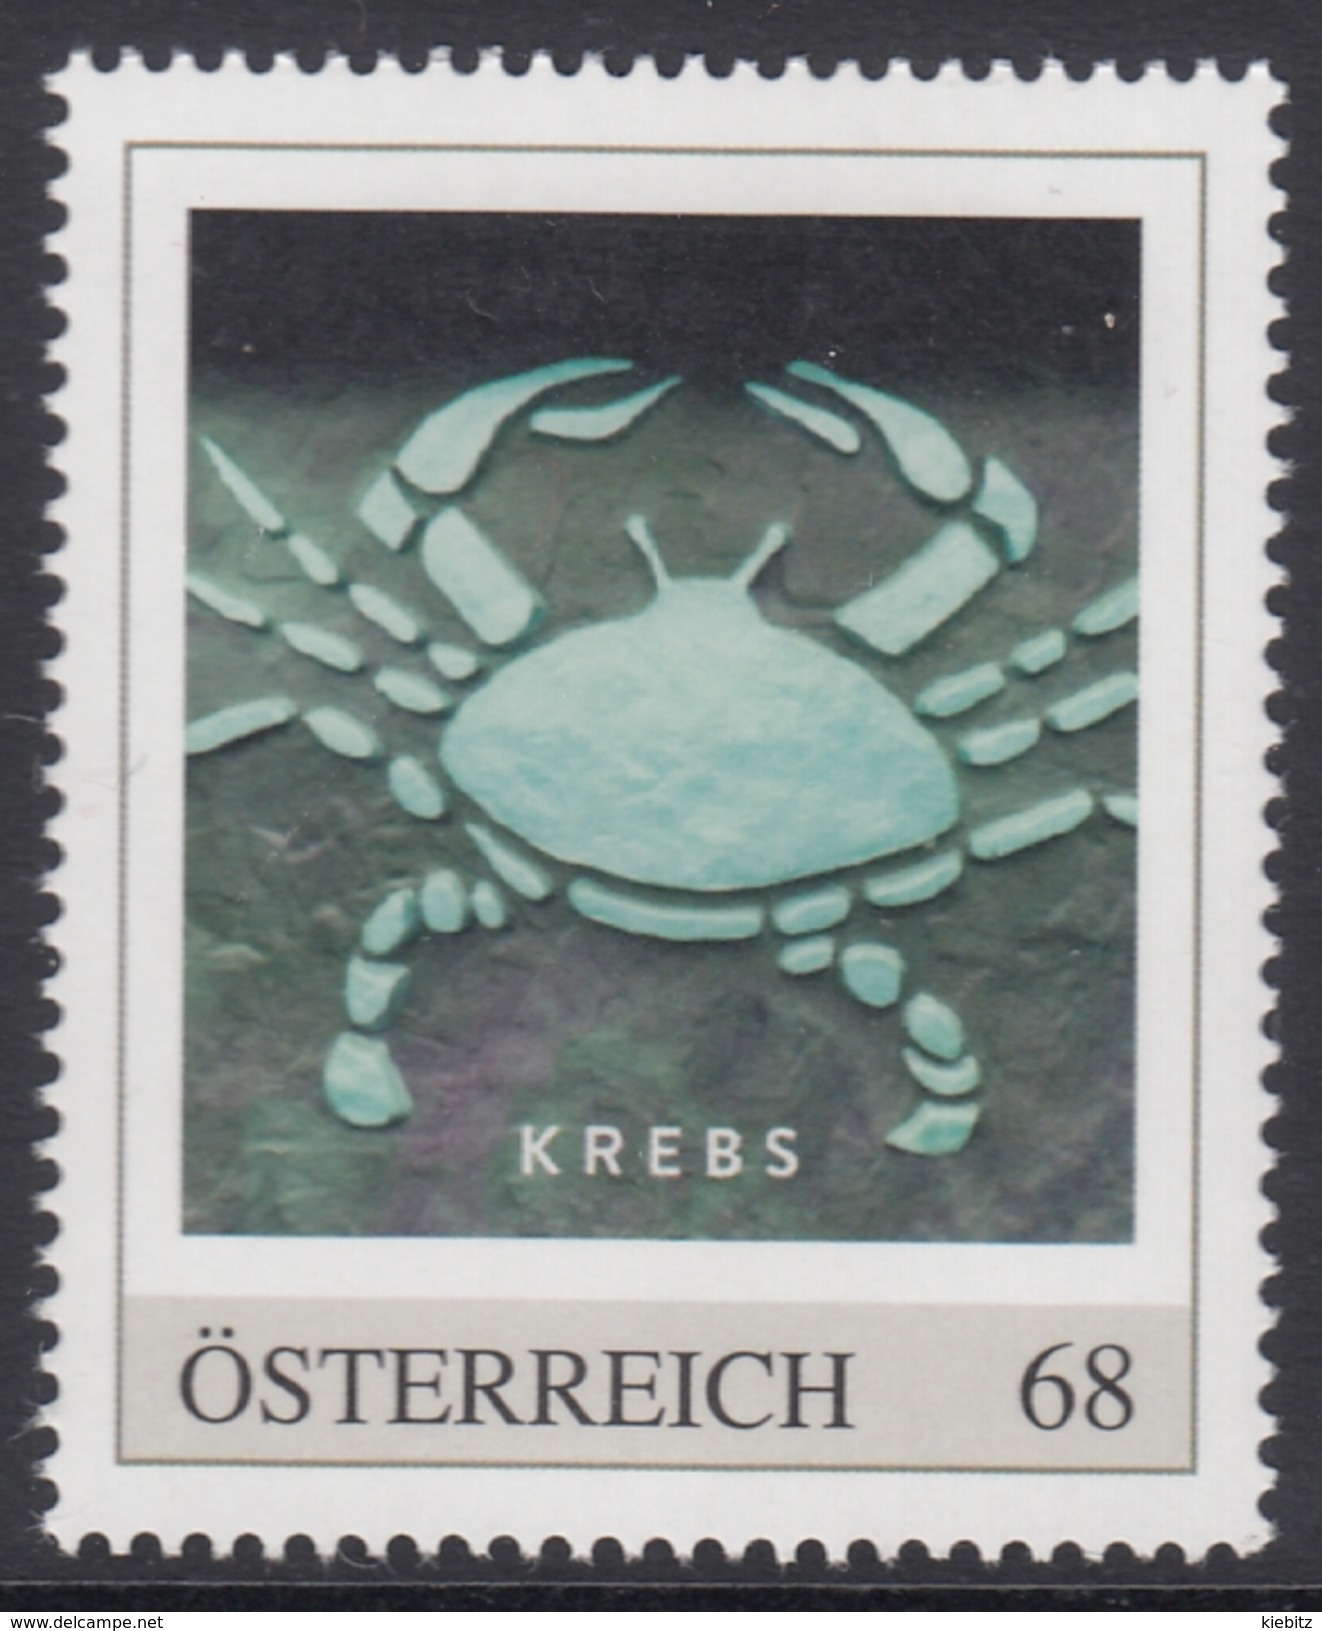 ÖSTERREICH 2016 ** Astrologie - KREBS Sternzeichen - PM Personalized Stamp MNH - Astrologie